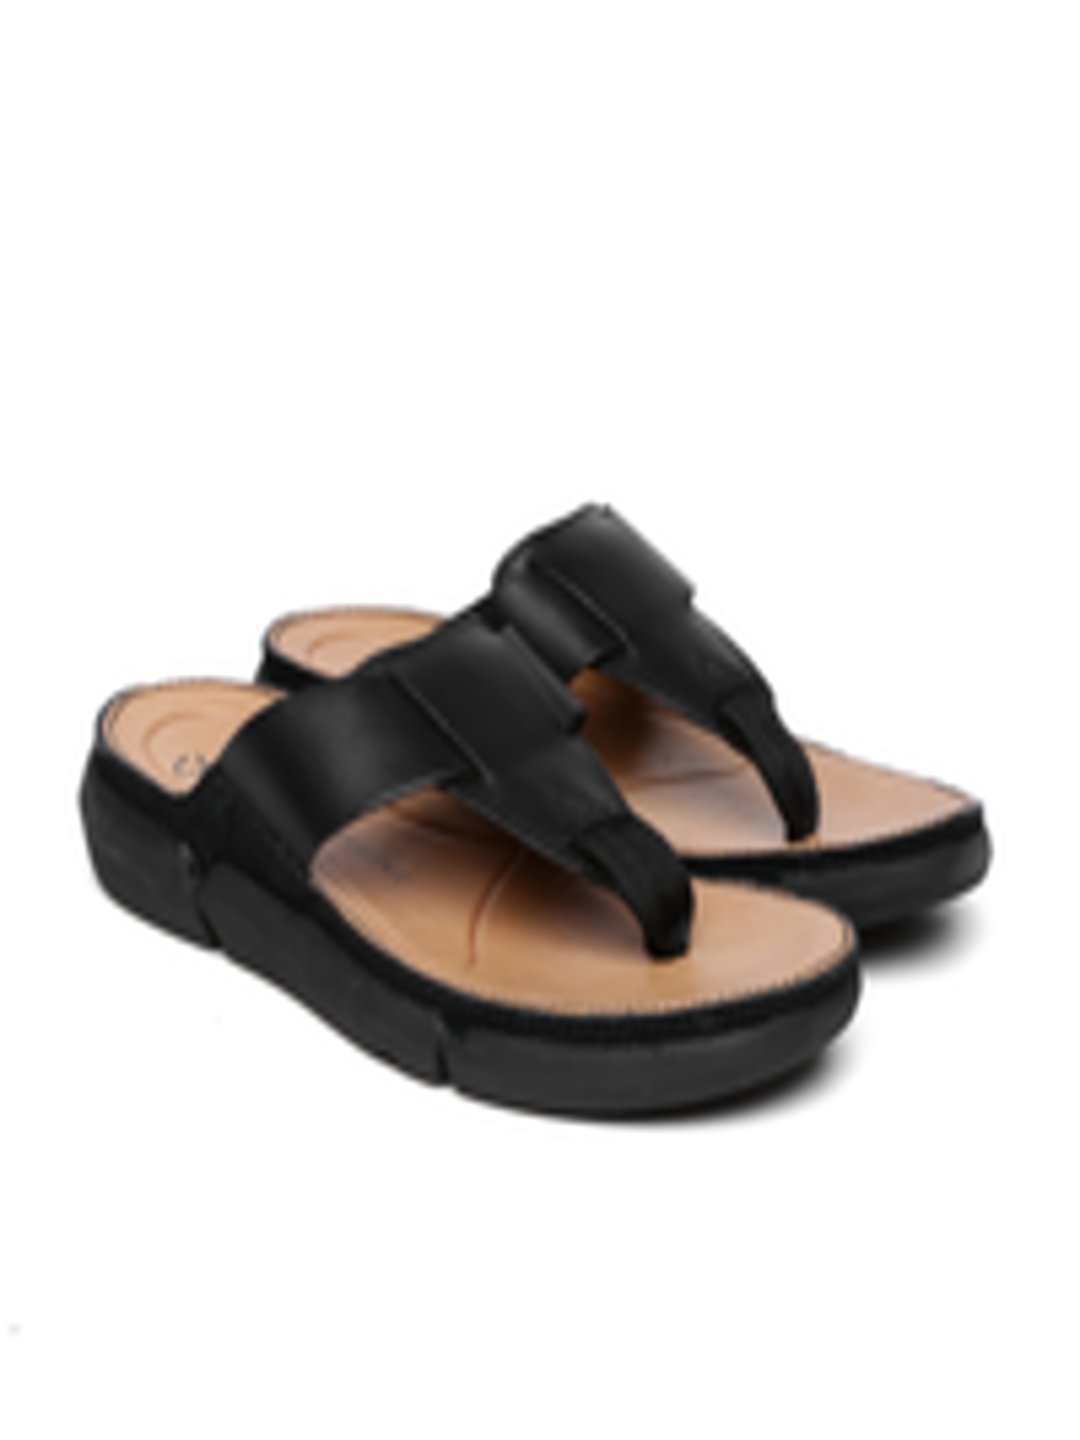 Buy Clarks Men Black Leather Sandals - Sandals for Men 2002867 | Myntra